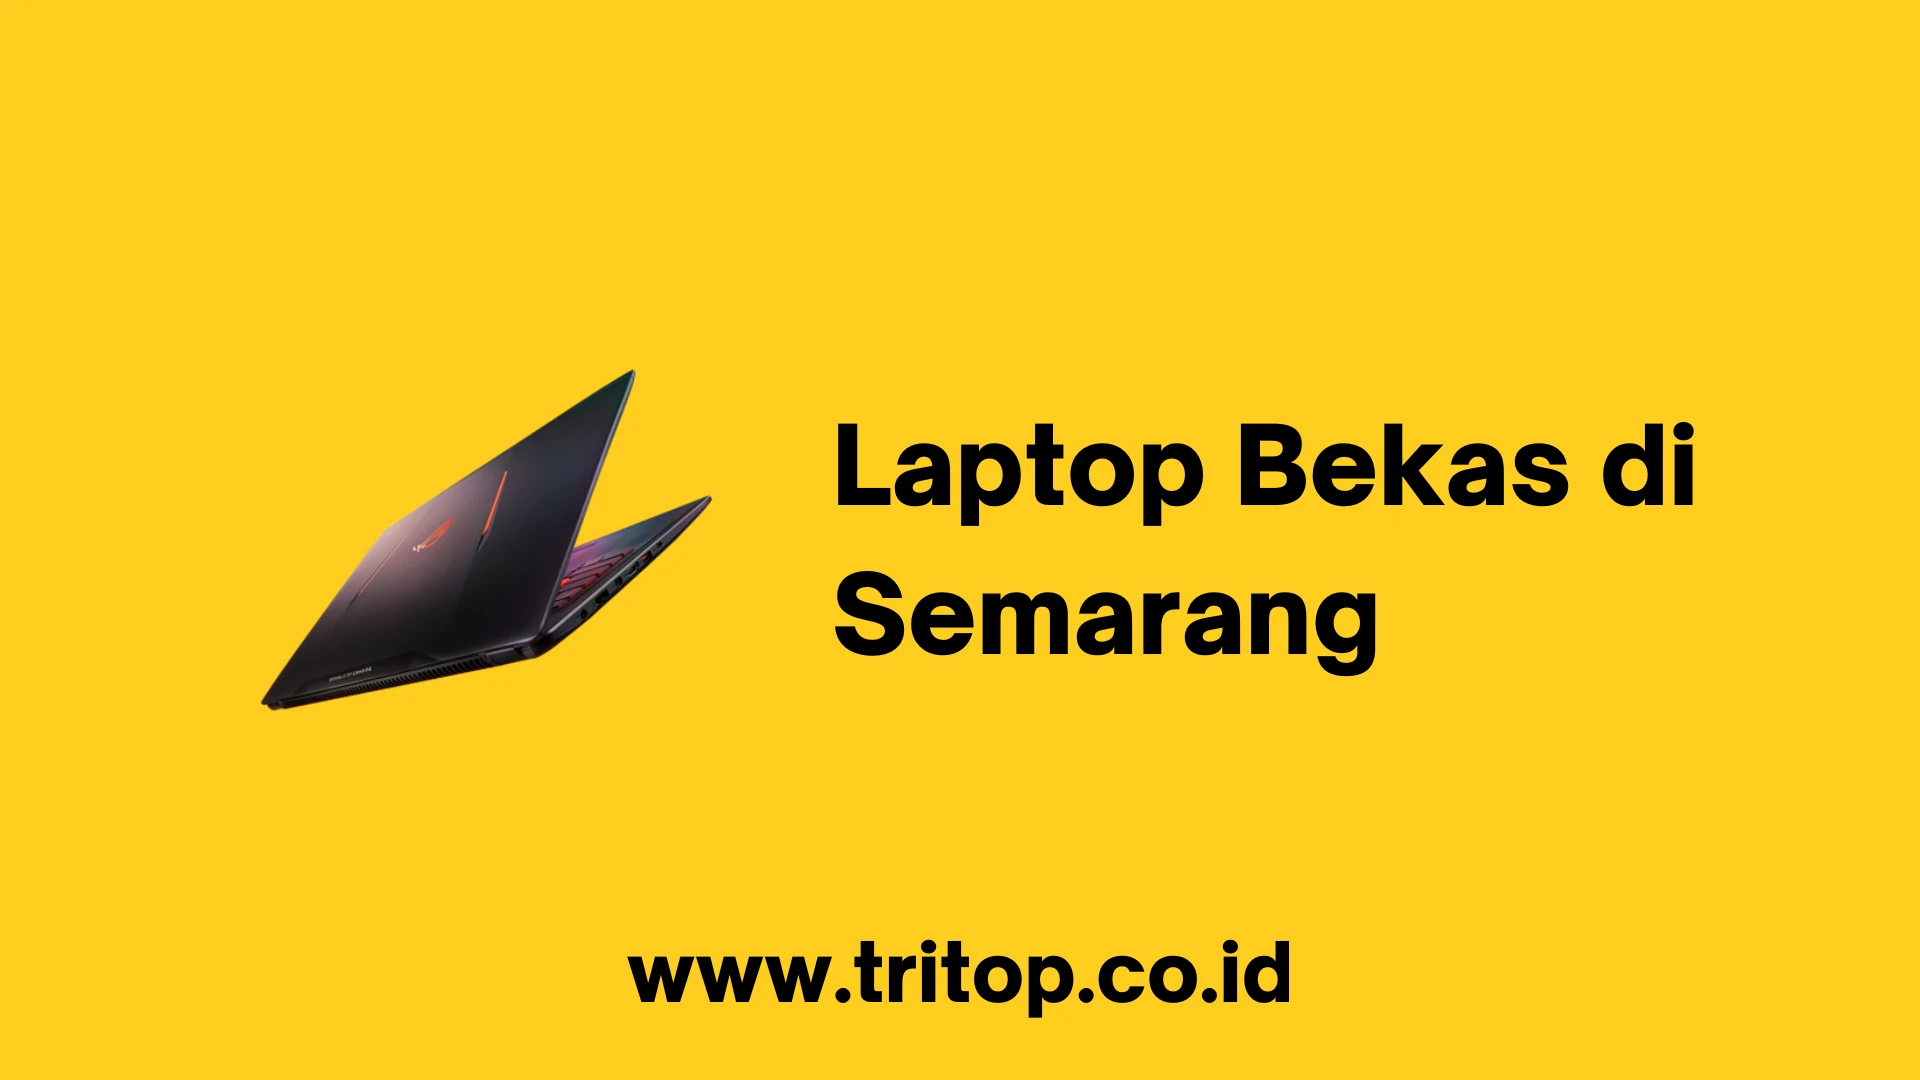 Laptop Bekas di Semarang